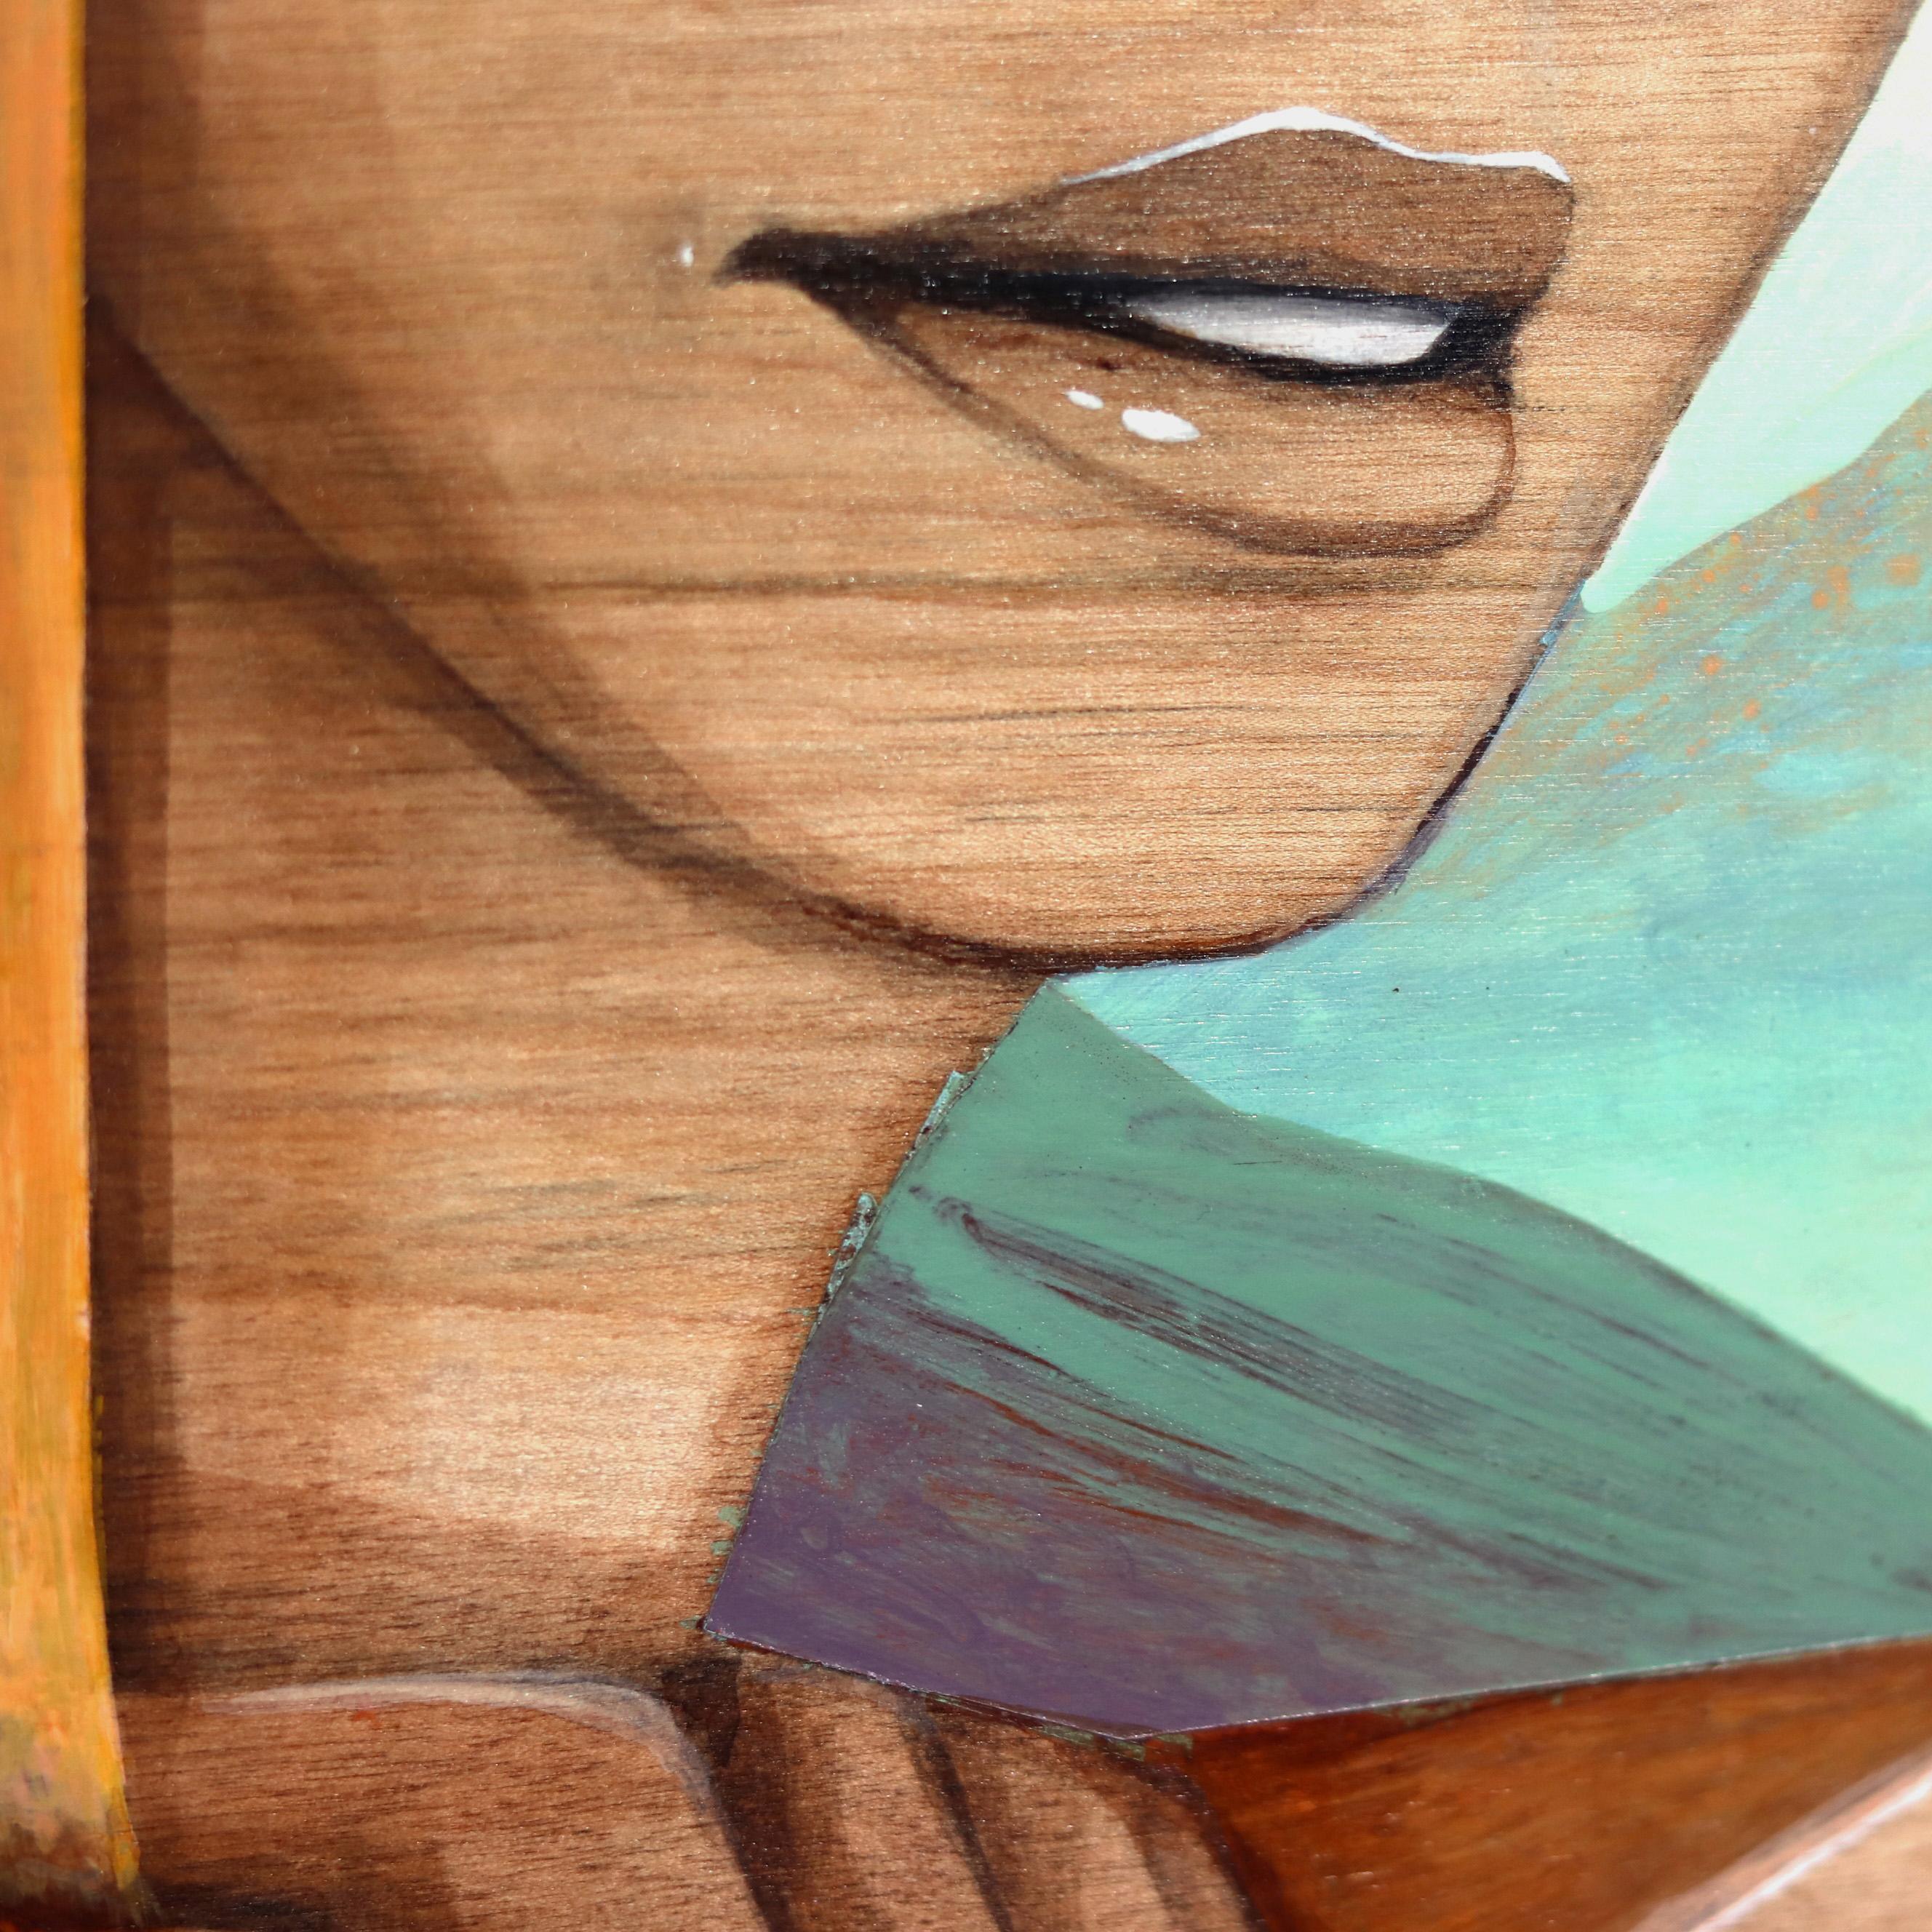 Eddy Lees figurative, surrealistische Porträtbilder auf belichtetem Holz zeigen gefühlsbetonte Sirenen, die ein Gefühl von Geheimnis und Verführungskraft hervorrufen. Seine originellen Kunstwerke kombinieren geometrische Elemente mit unschuldigen